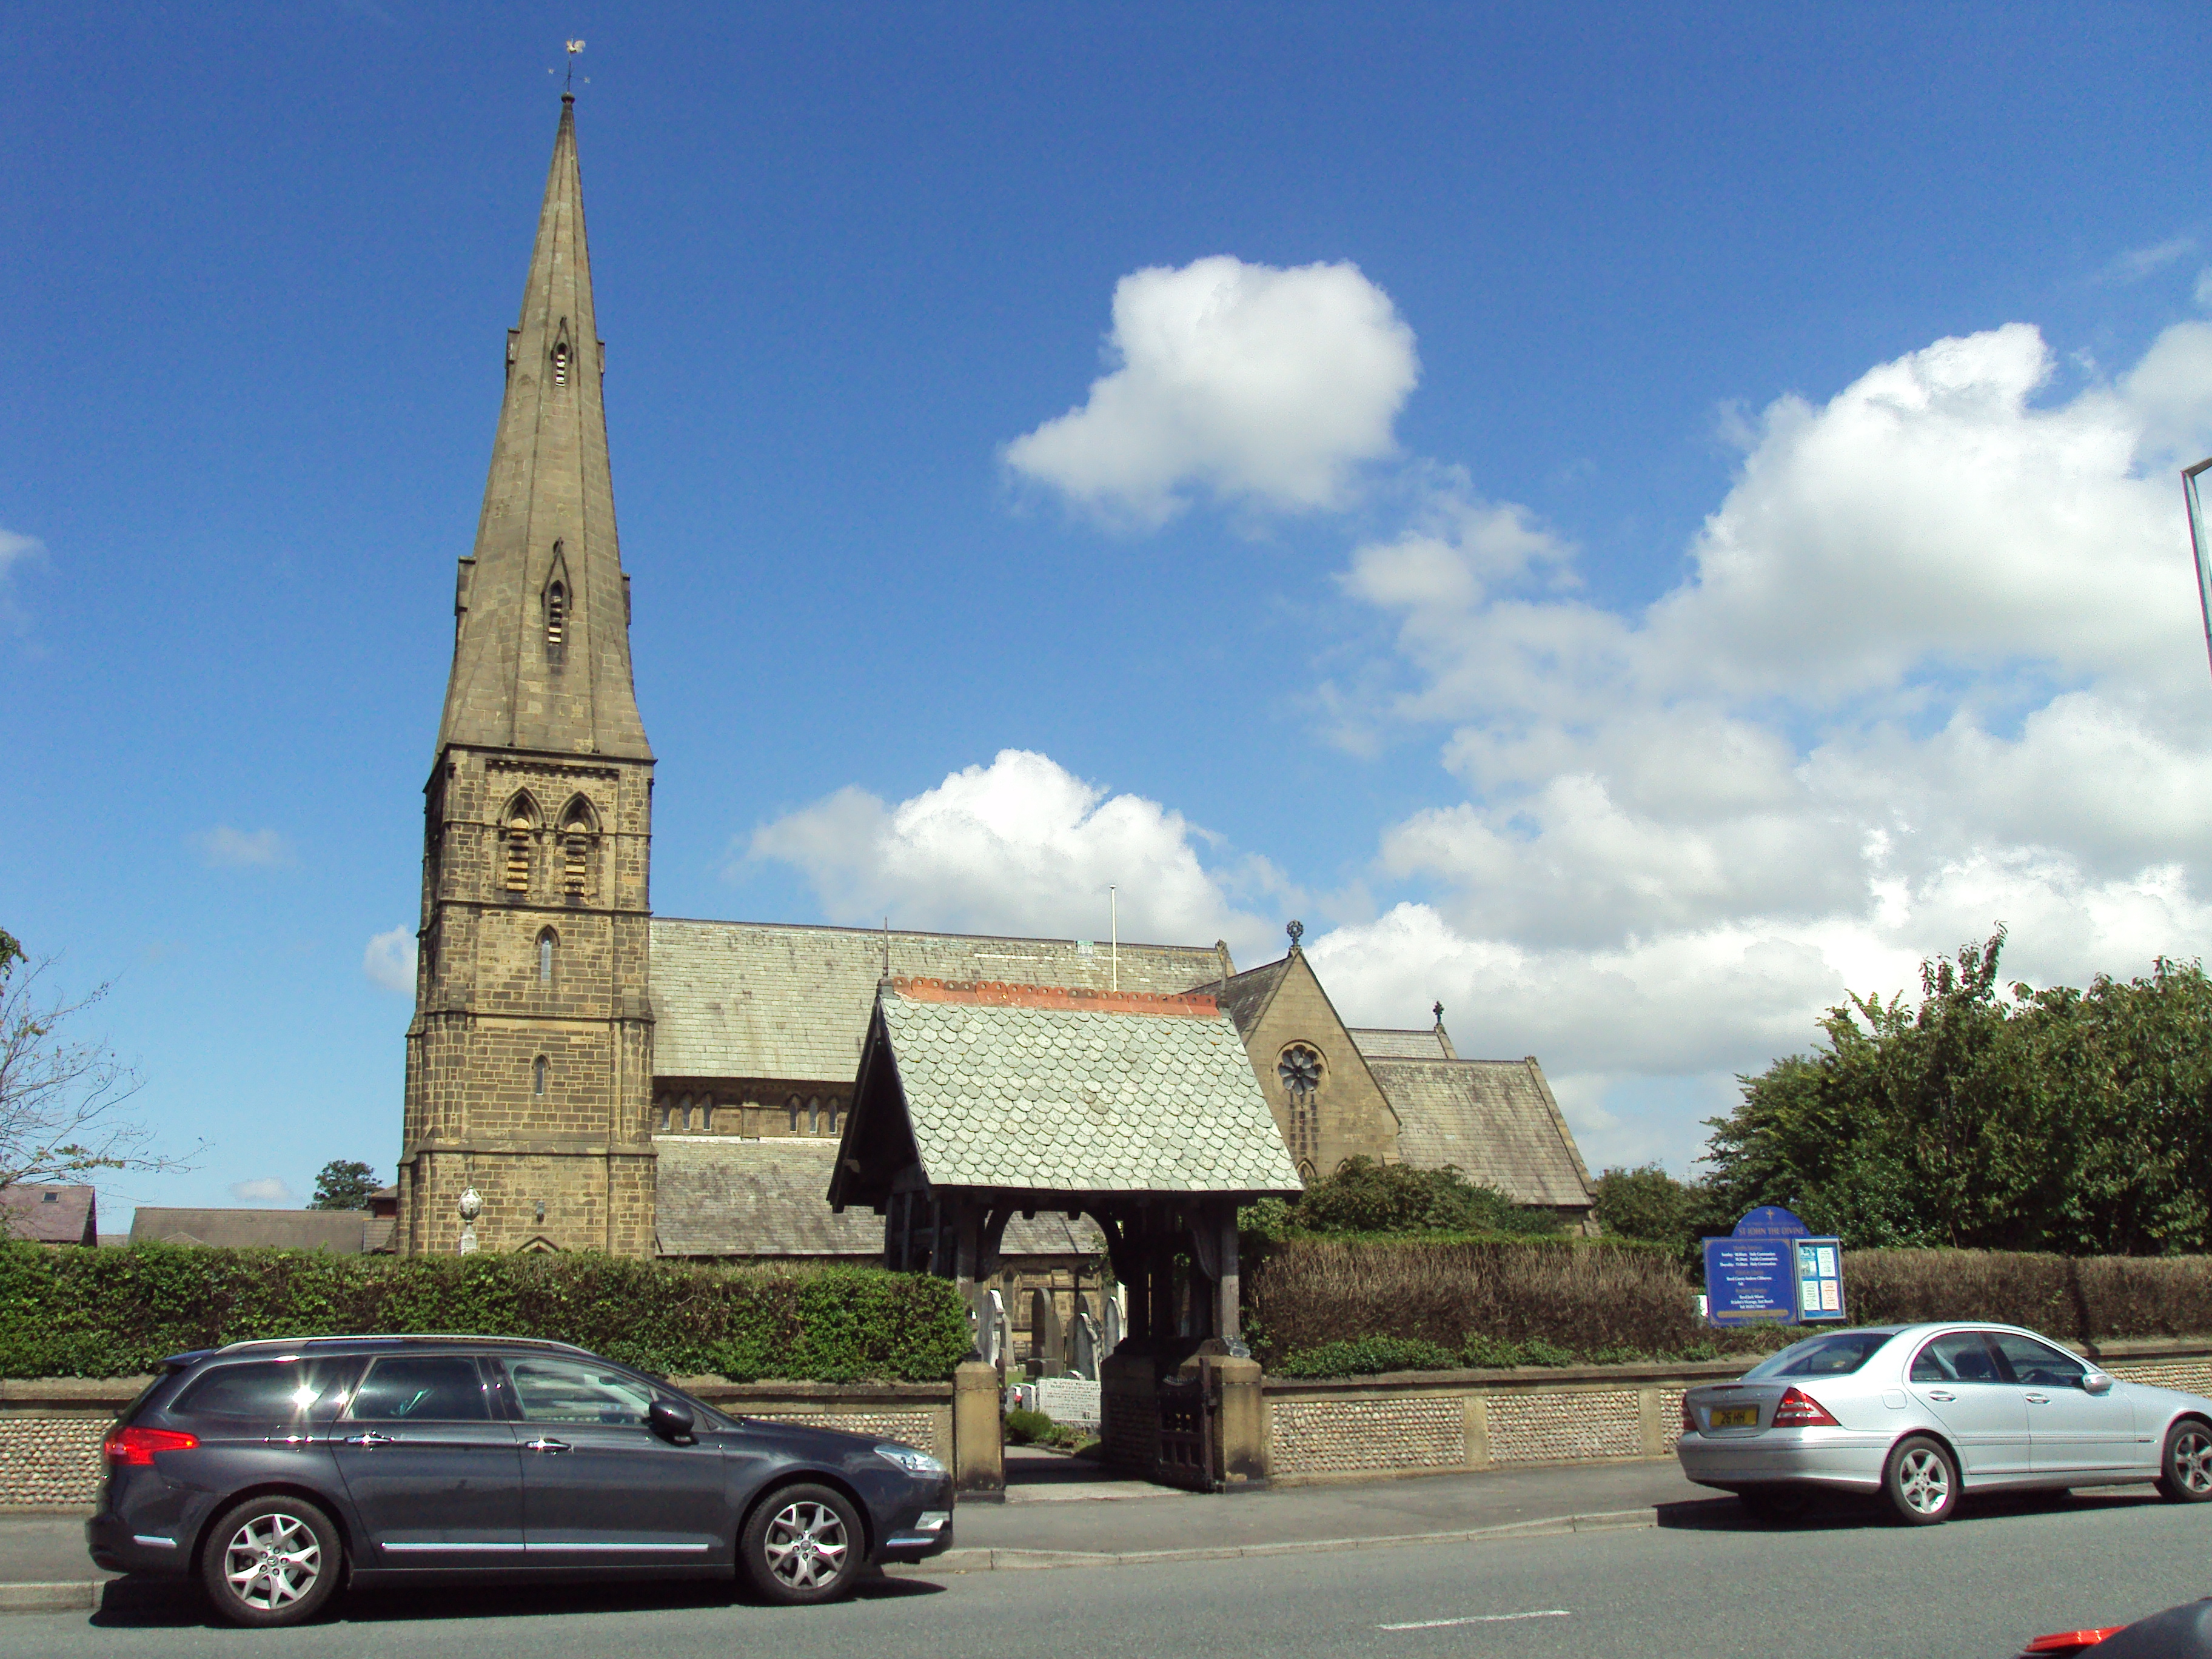 St John's Church, Lytham